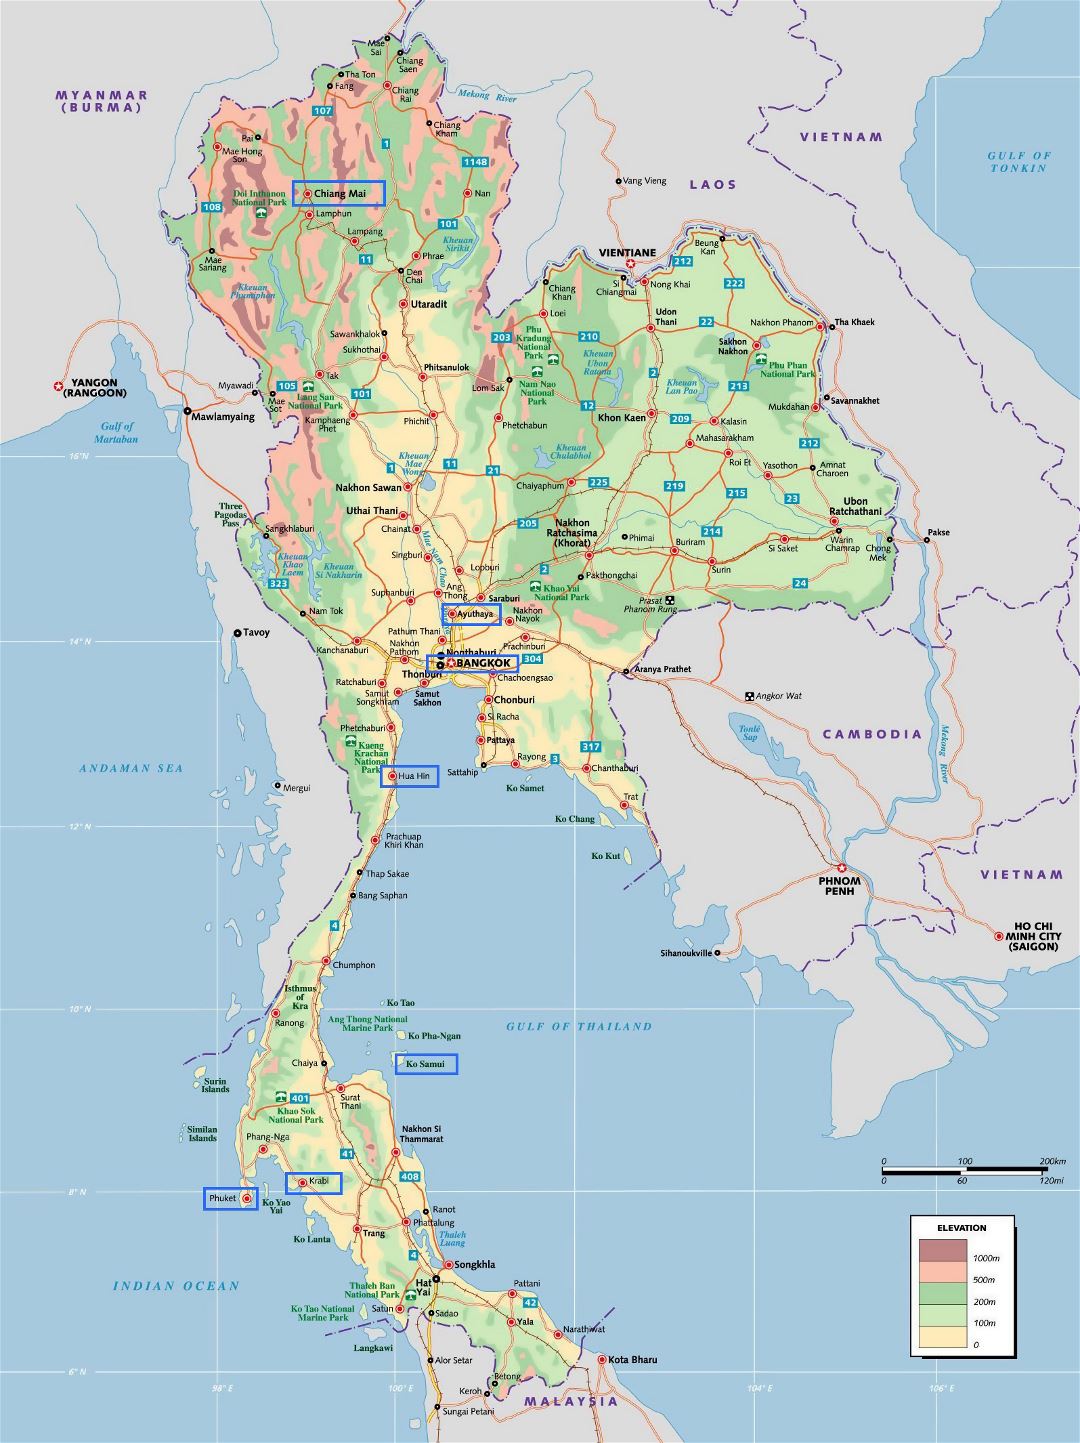 Grande mapa de elevación de Tailandia con otras marcas